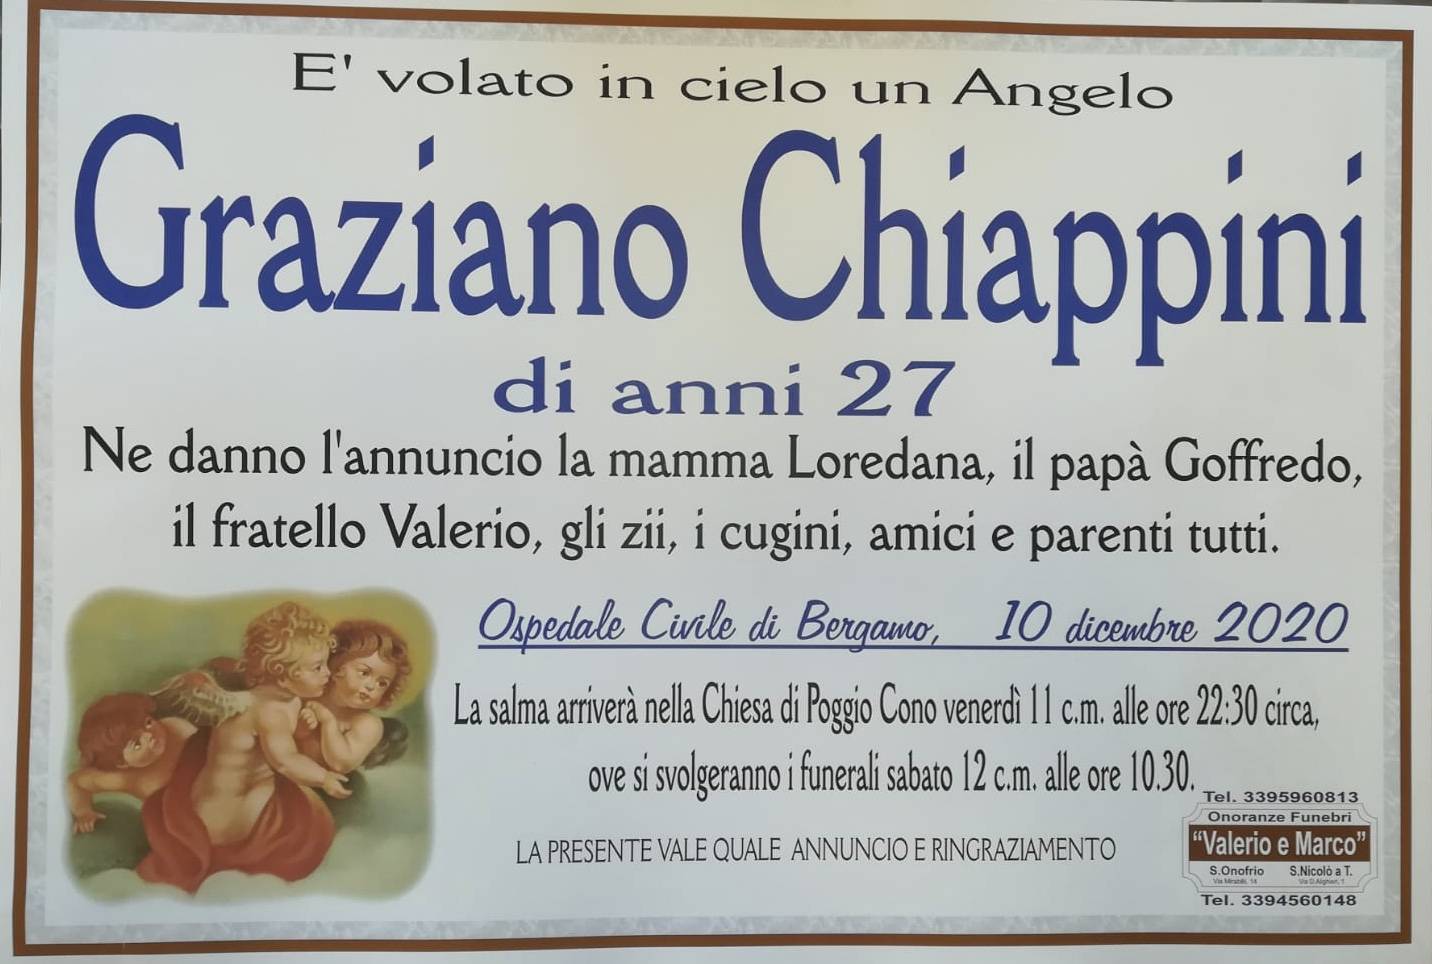 Graziano Chiappini